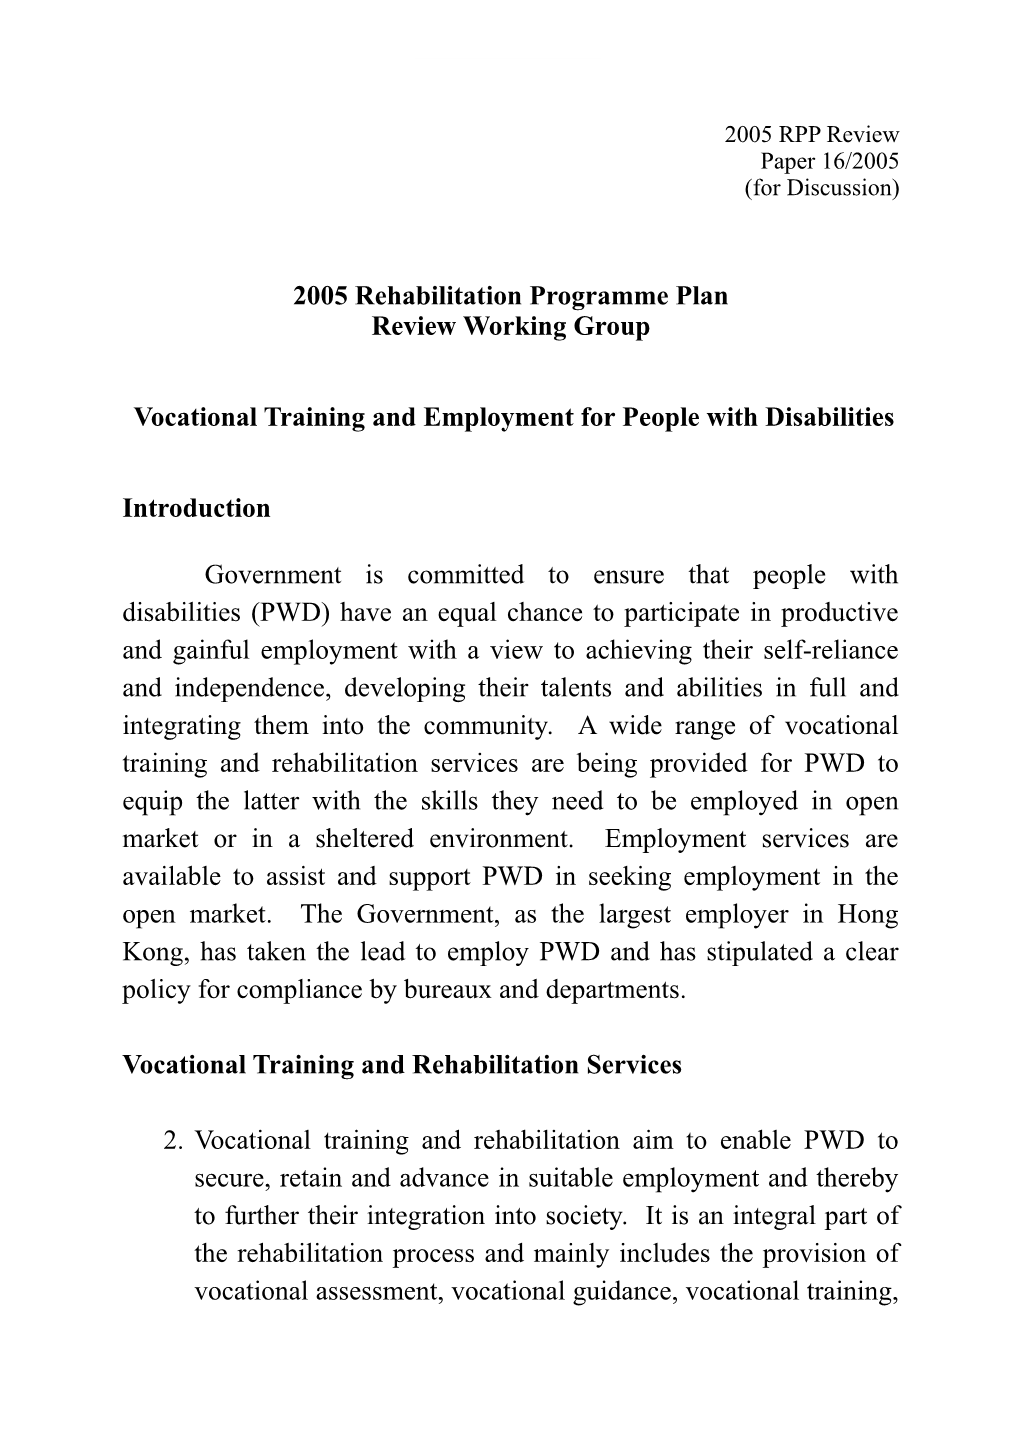 2005 Rehabilitation Programme Plan